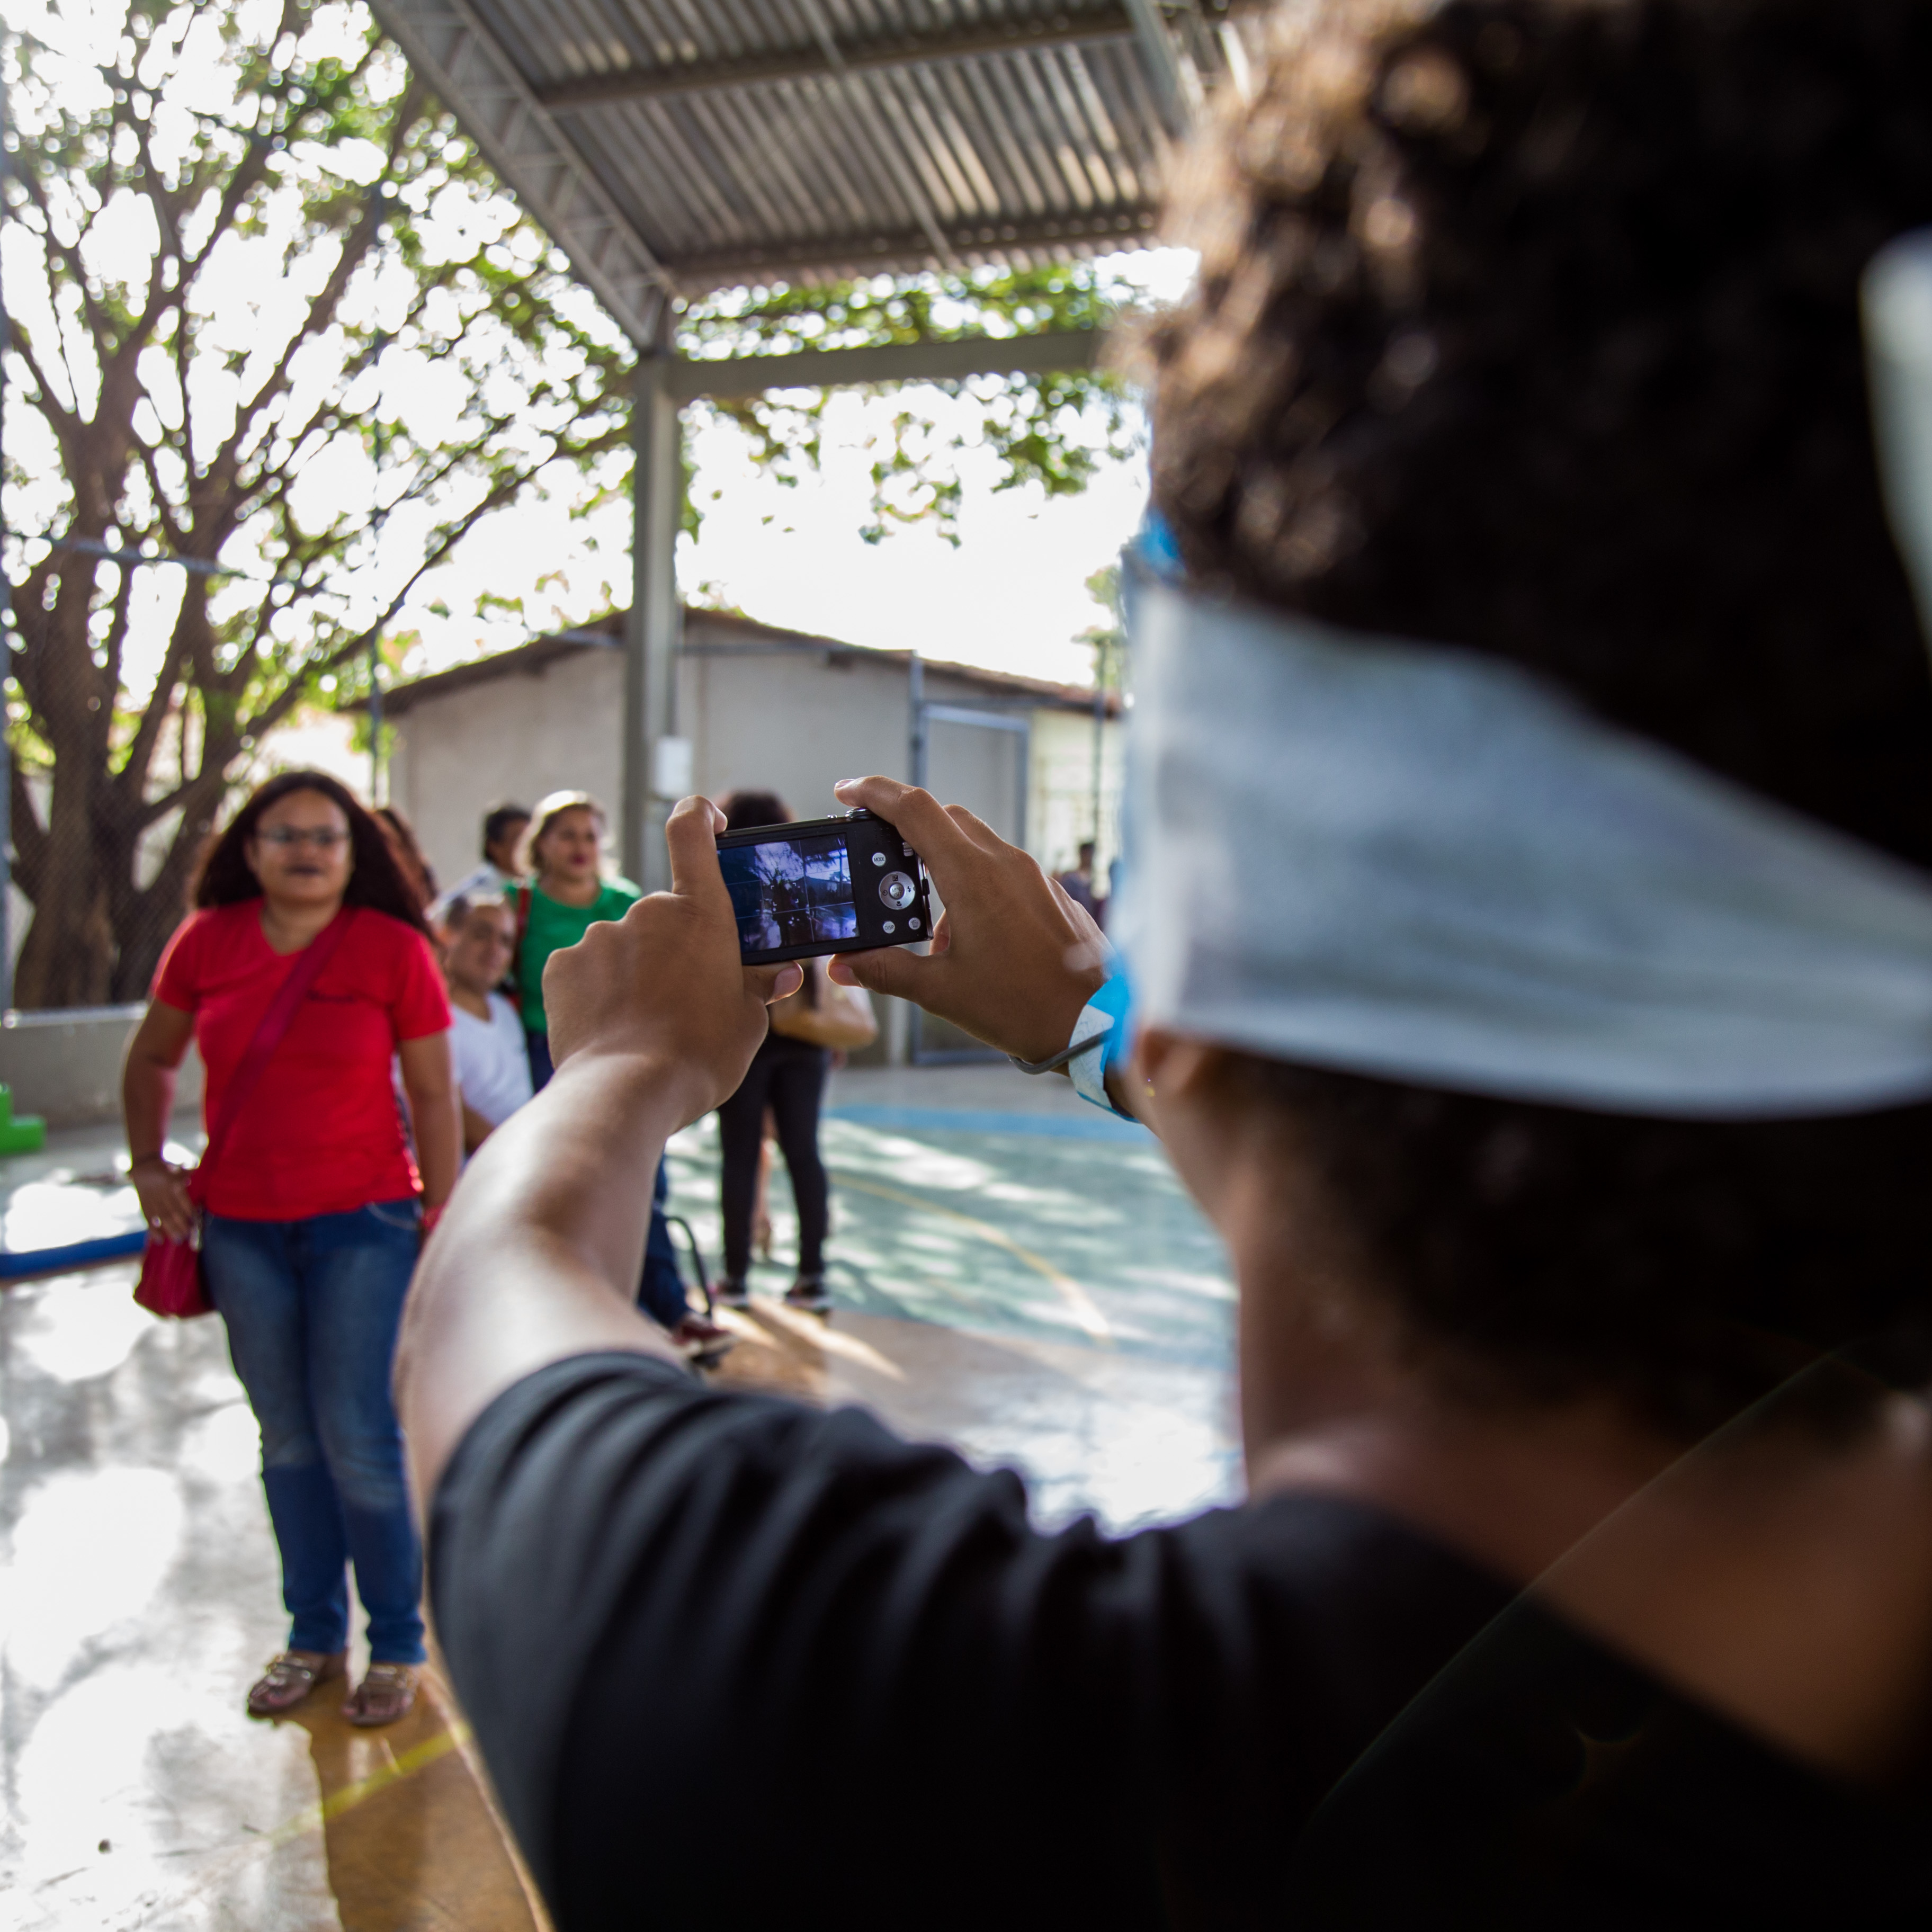 Um aluno vendado segura uma câmera fotográfica digital com as duas mãos. Mesmo sem enxergar, ele procura mirar as pessoas que estão na quadra de esportes.